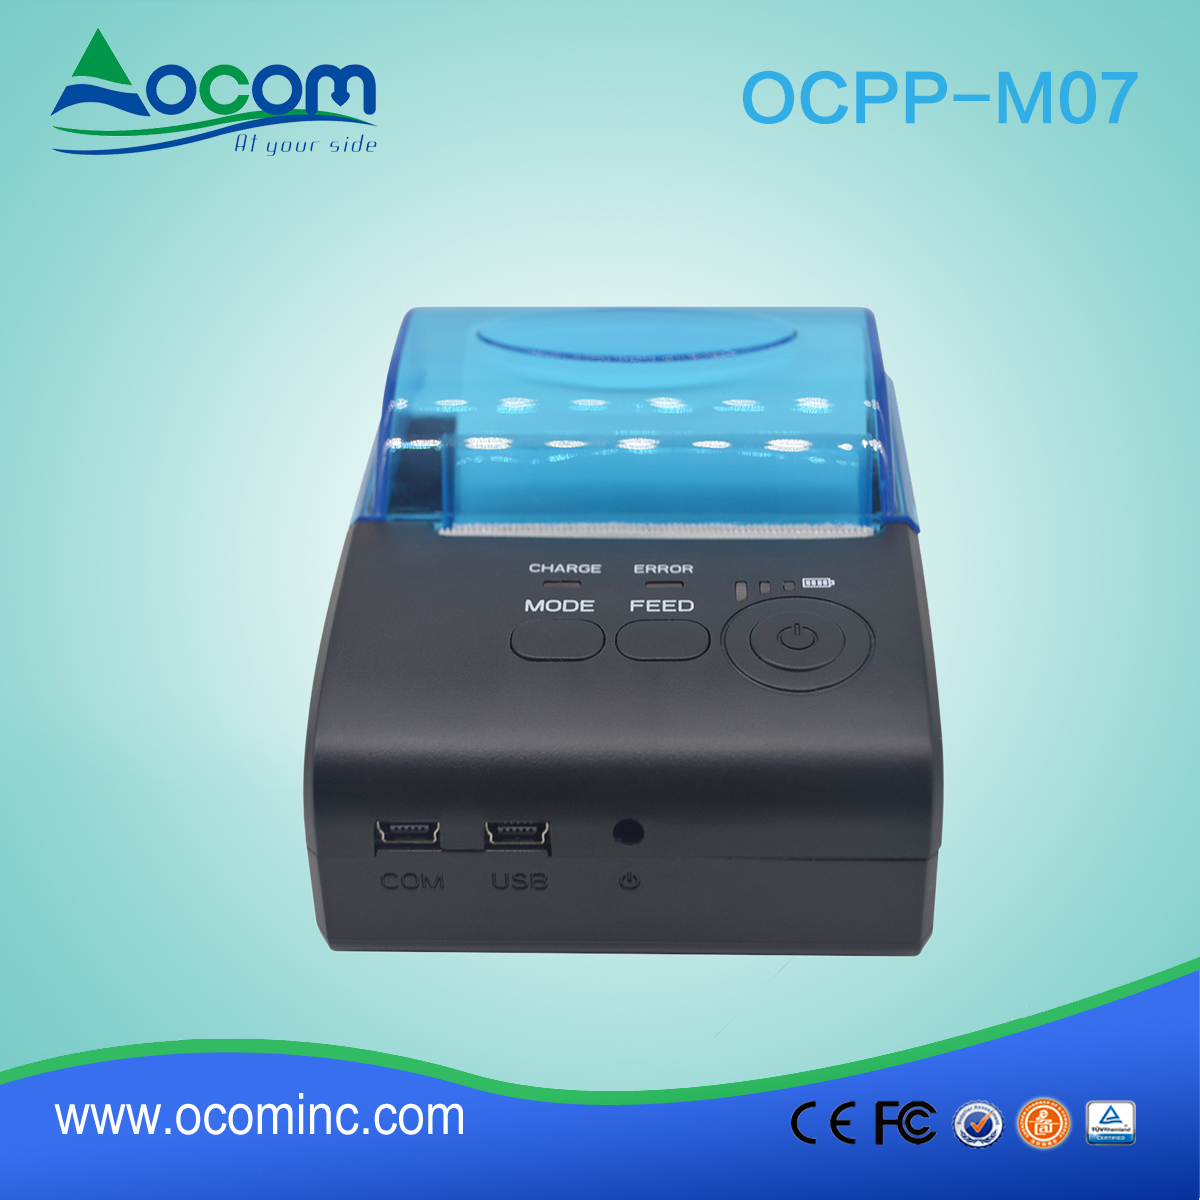 OCPP-M07 bezprzewodowe usb bluetooth termiczne Mobilna drukarka dla smartphone